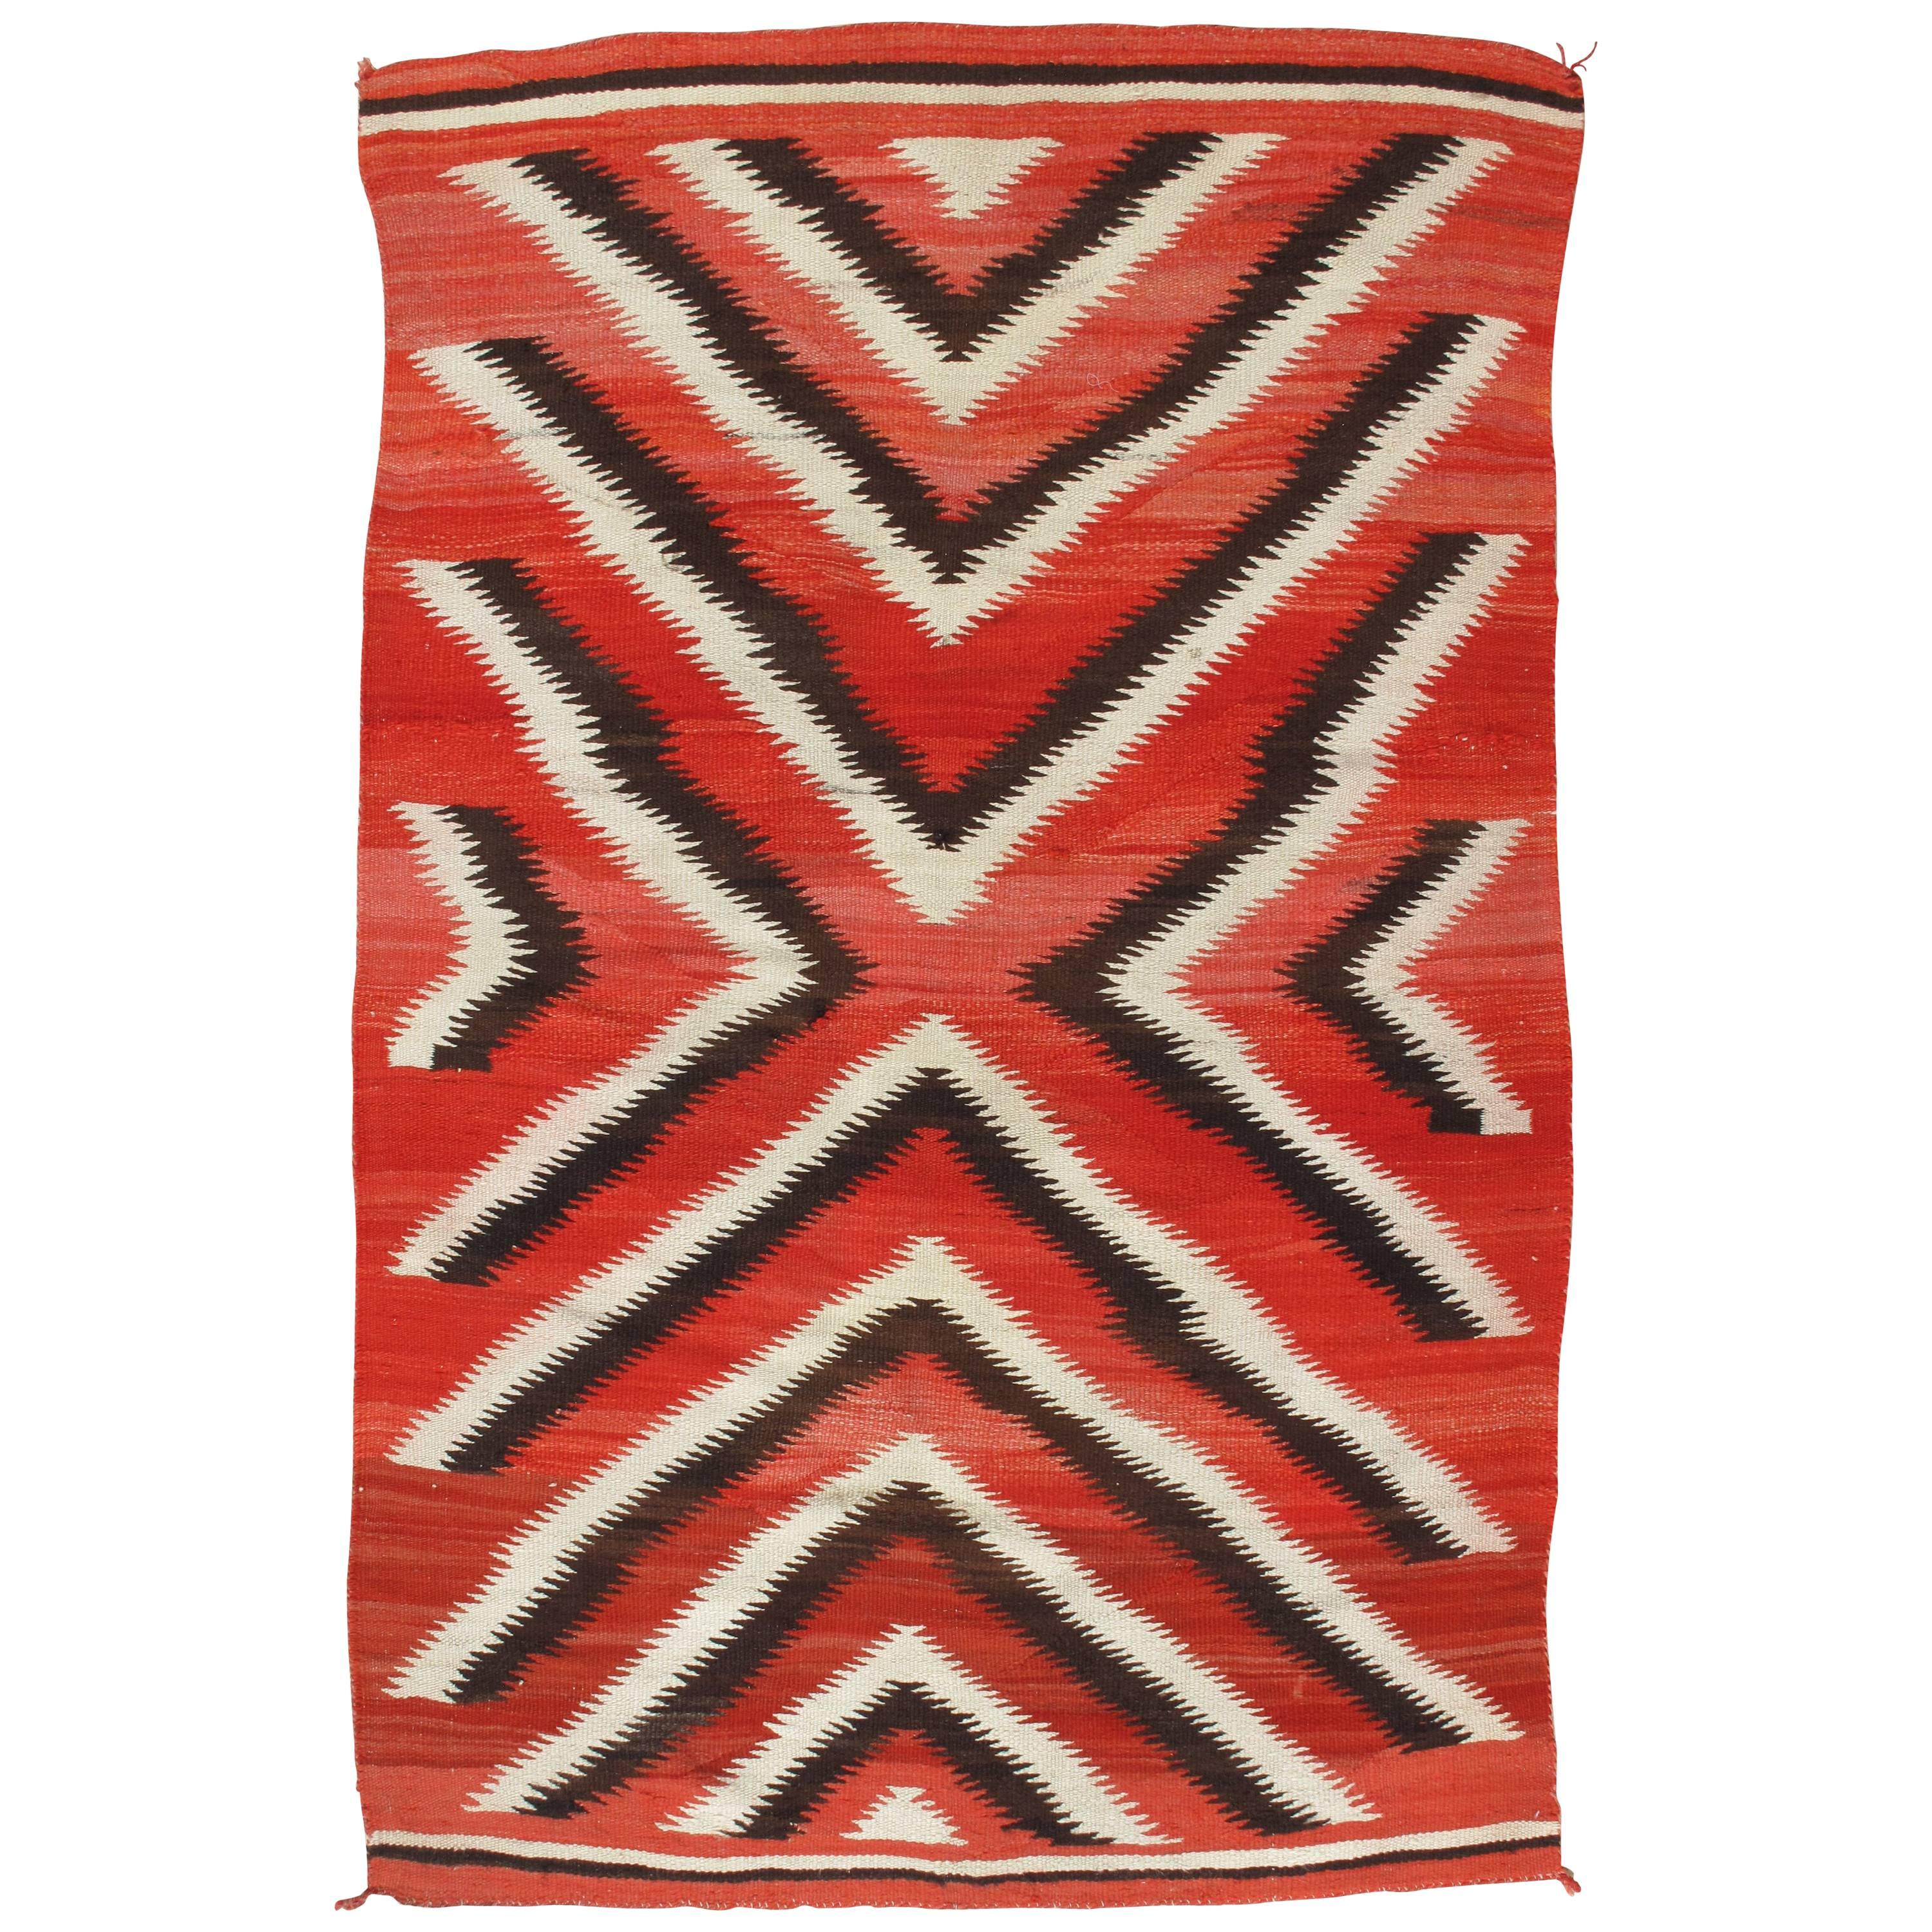 Antique Storm Navajo Carpet, Folk Rug, Handmade Wool, Beige, Red, Brown